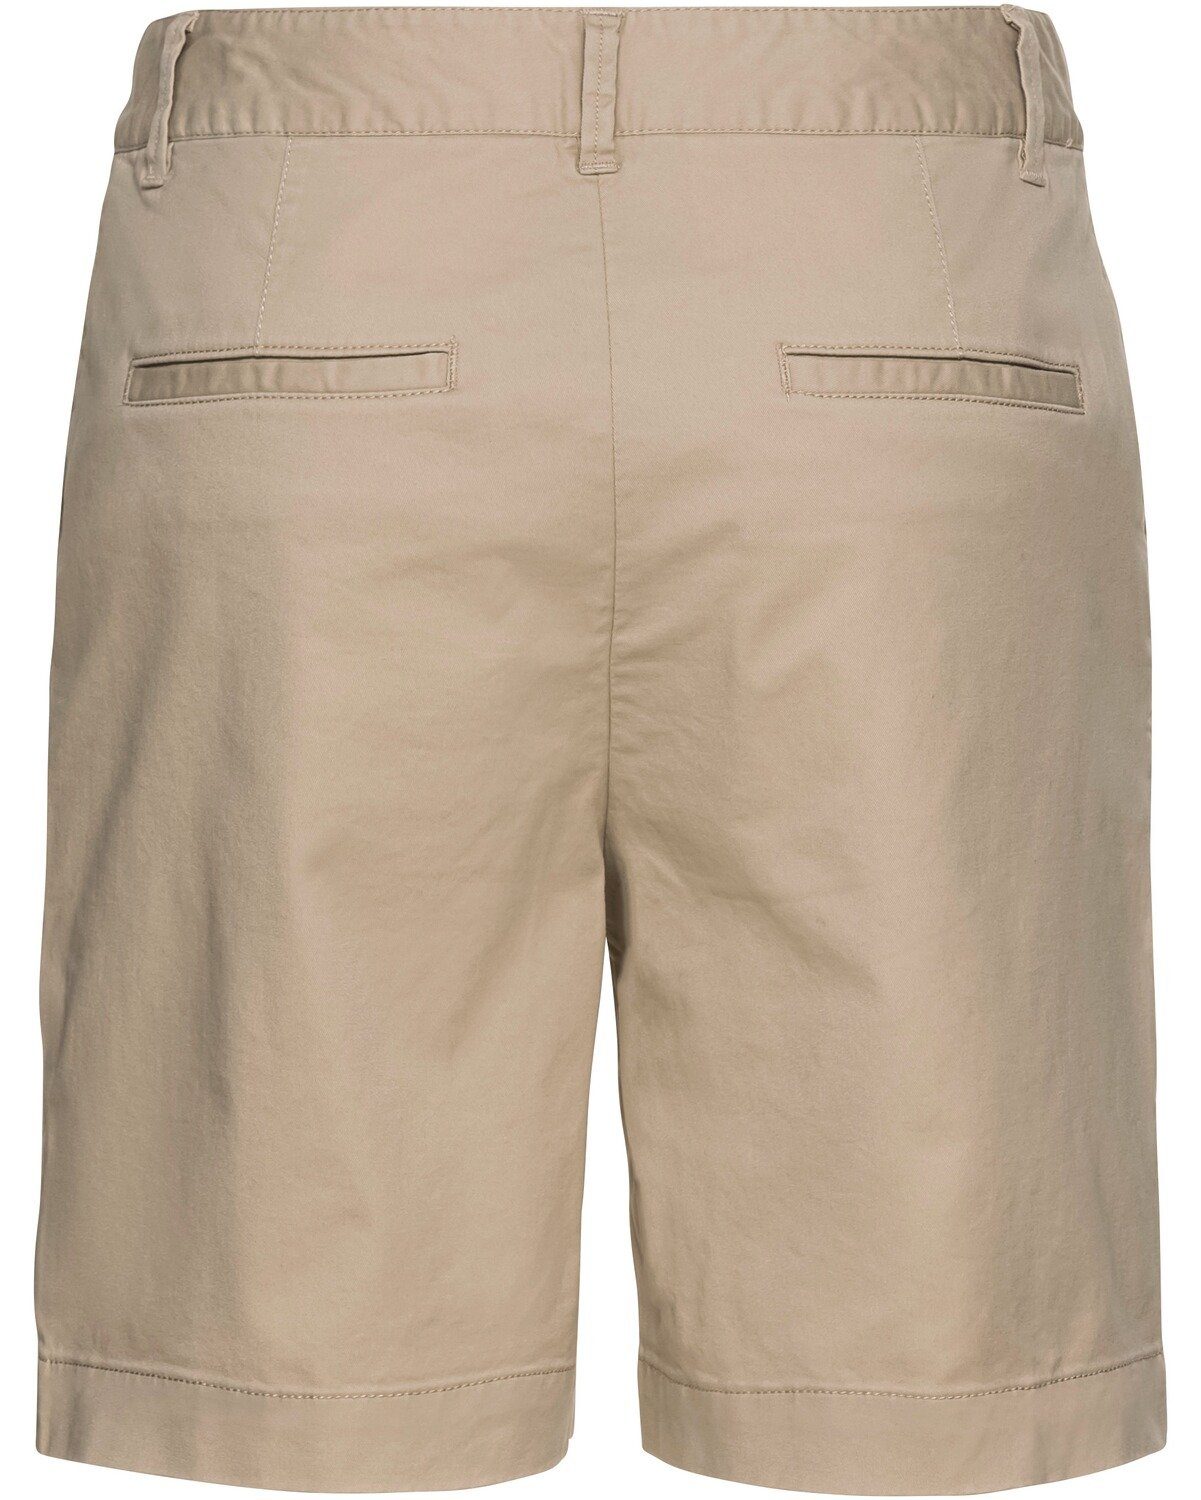 Chinoshorts Sand Gant Shorts